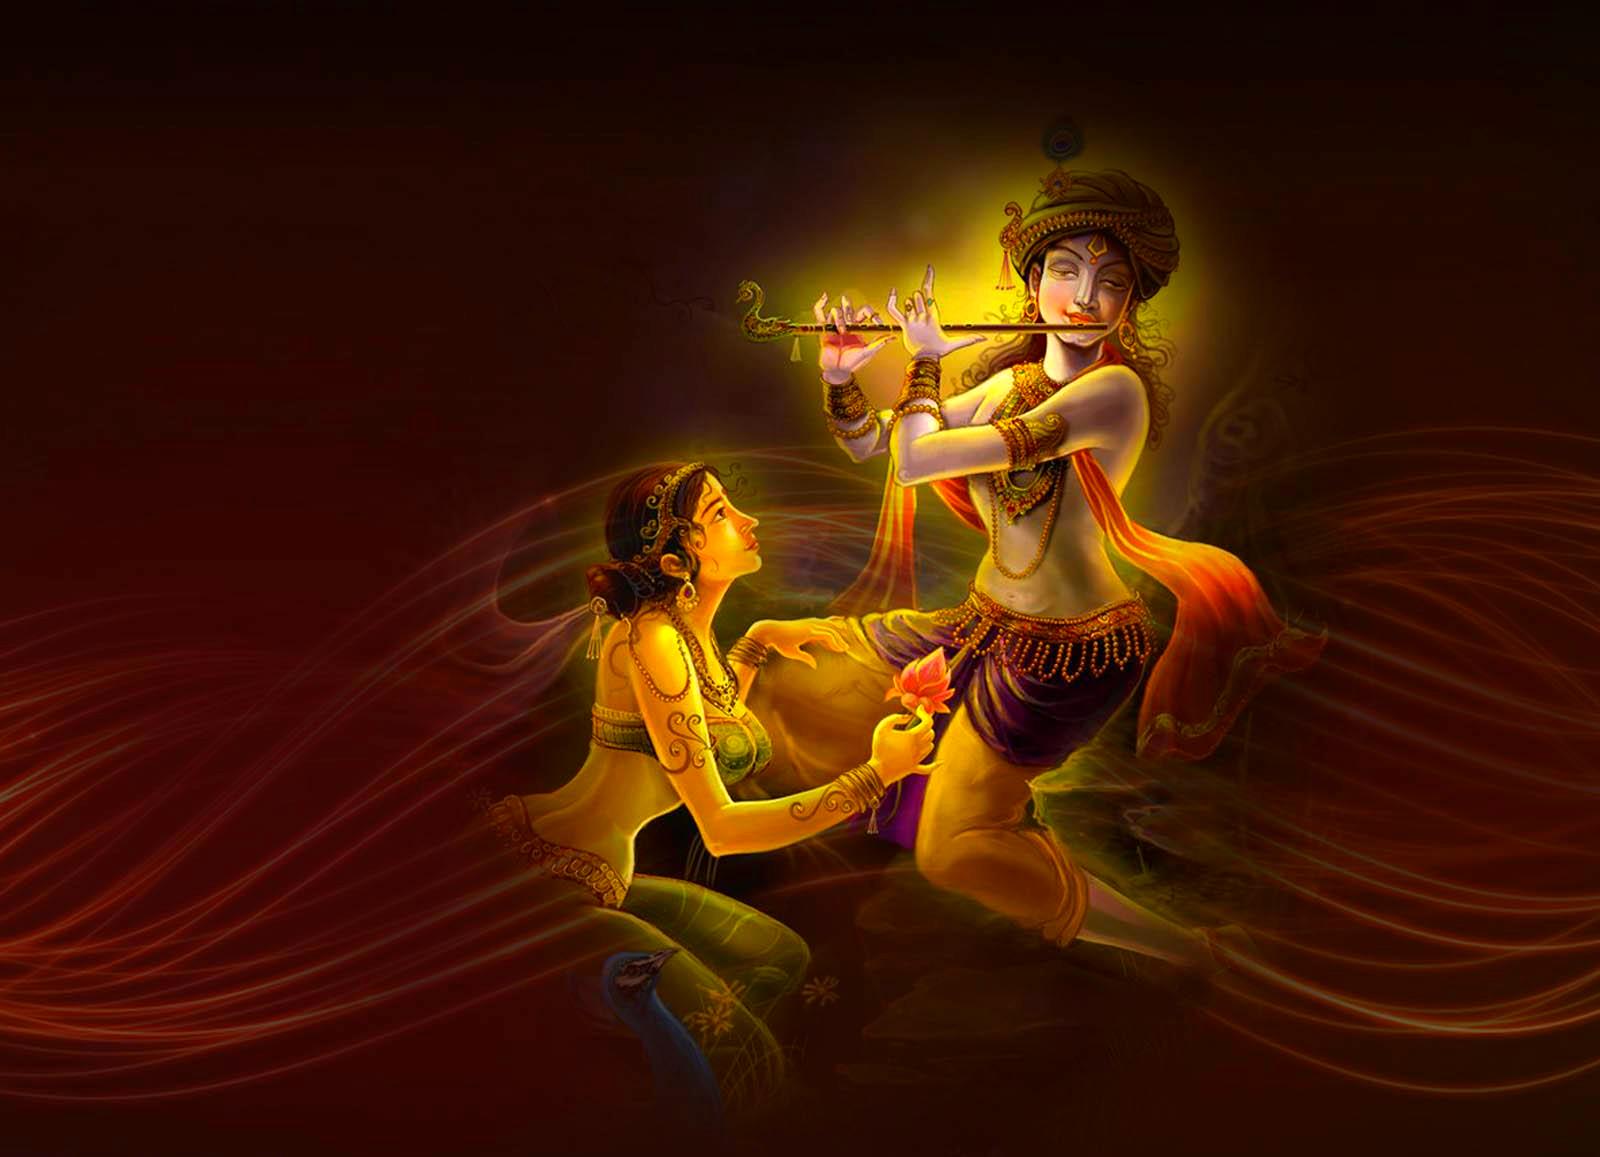 Shri Krishna Wallpaper Hd Download  1920x1080 Wallpaper  teahubio